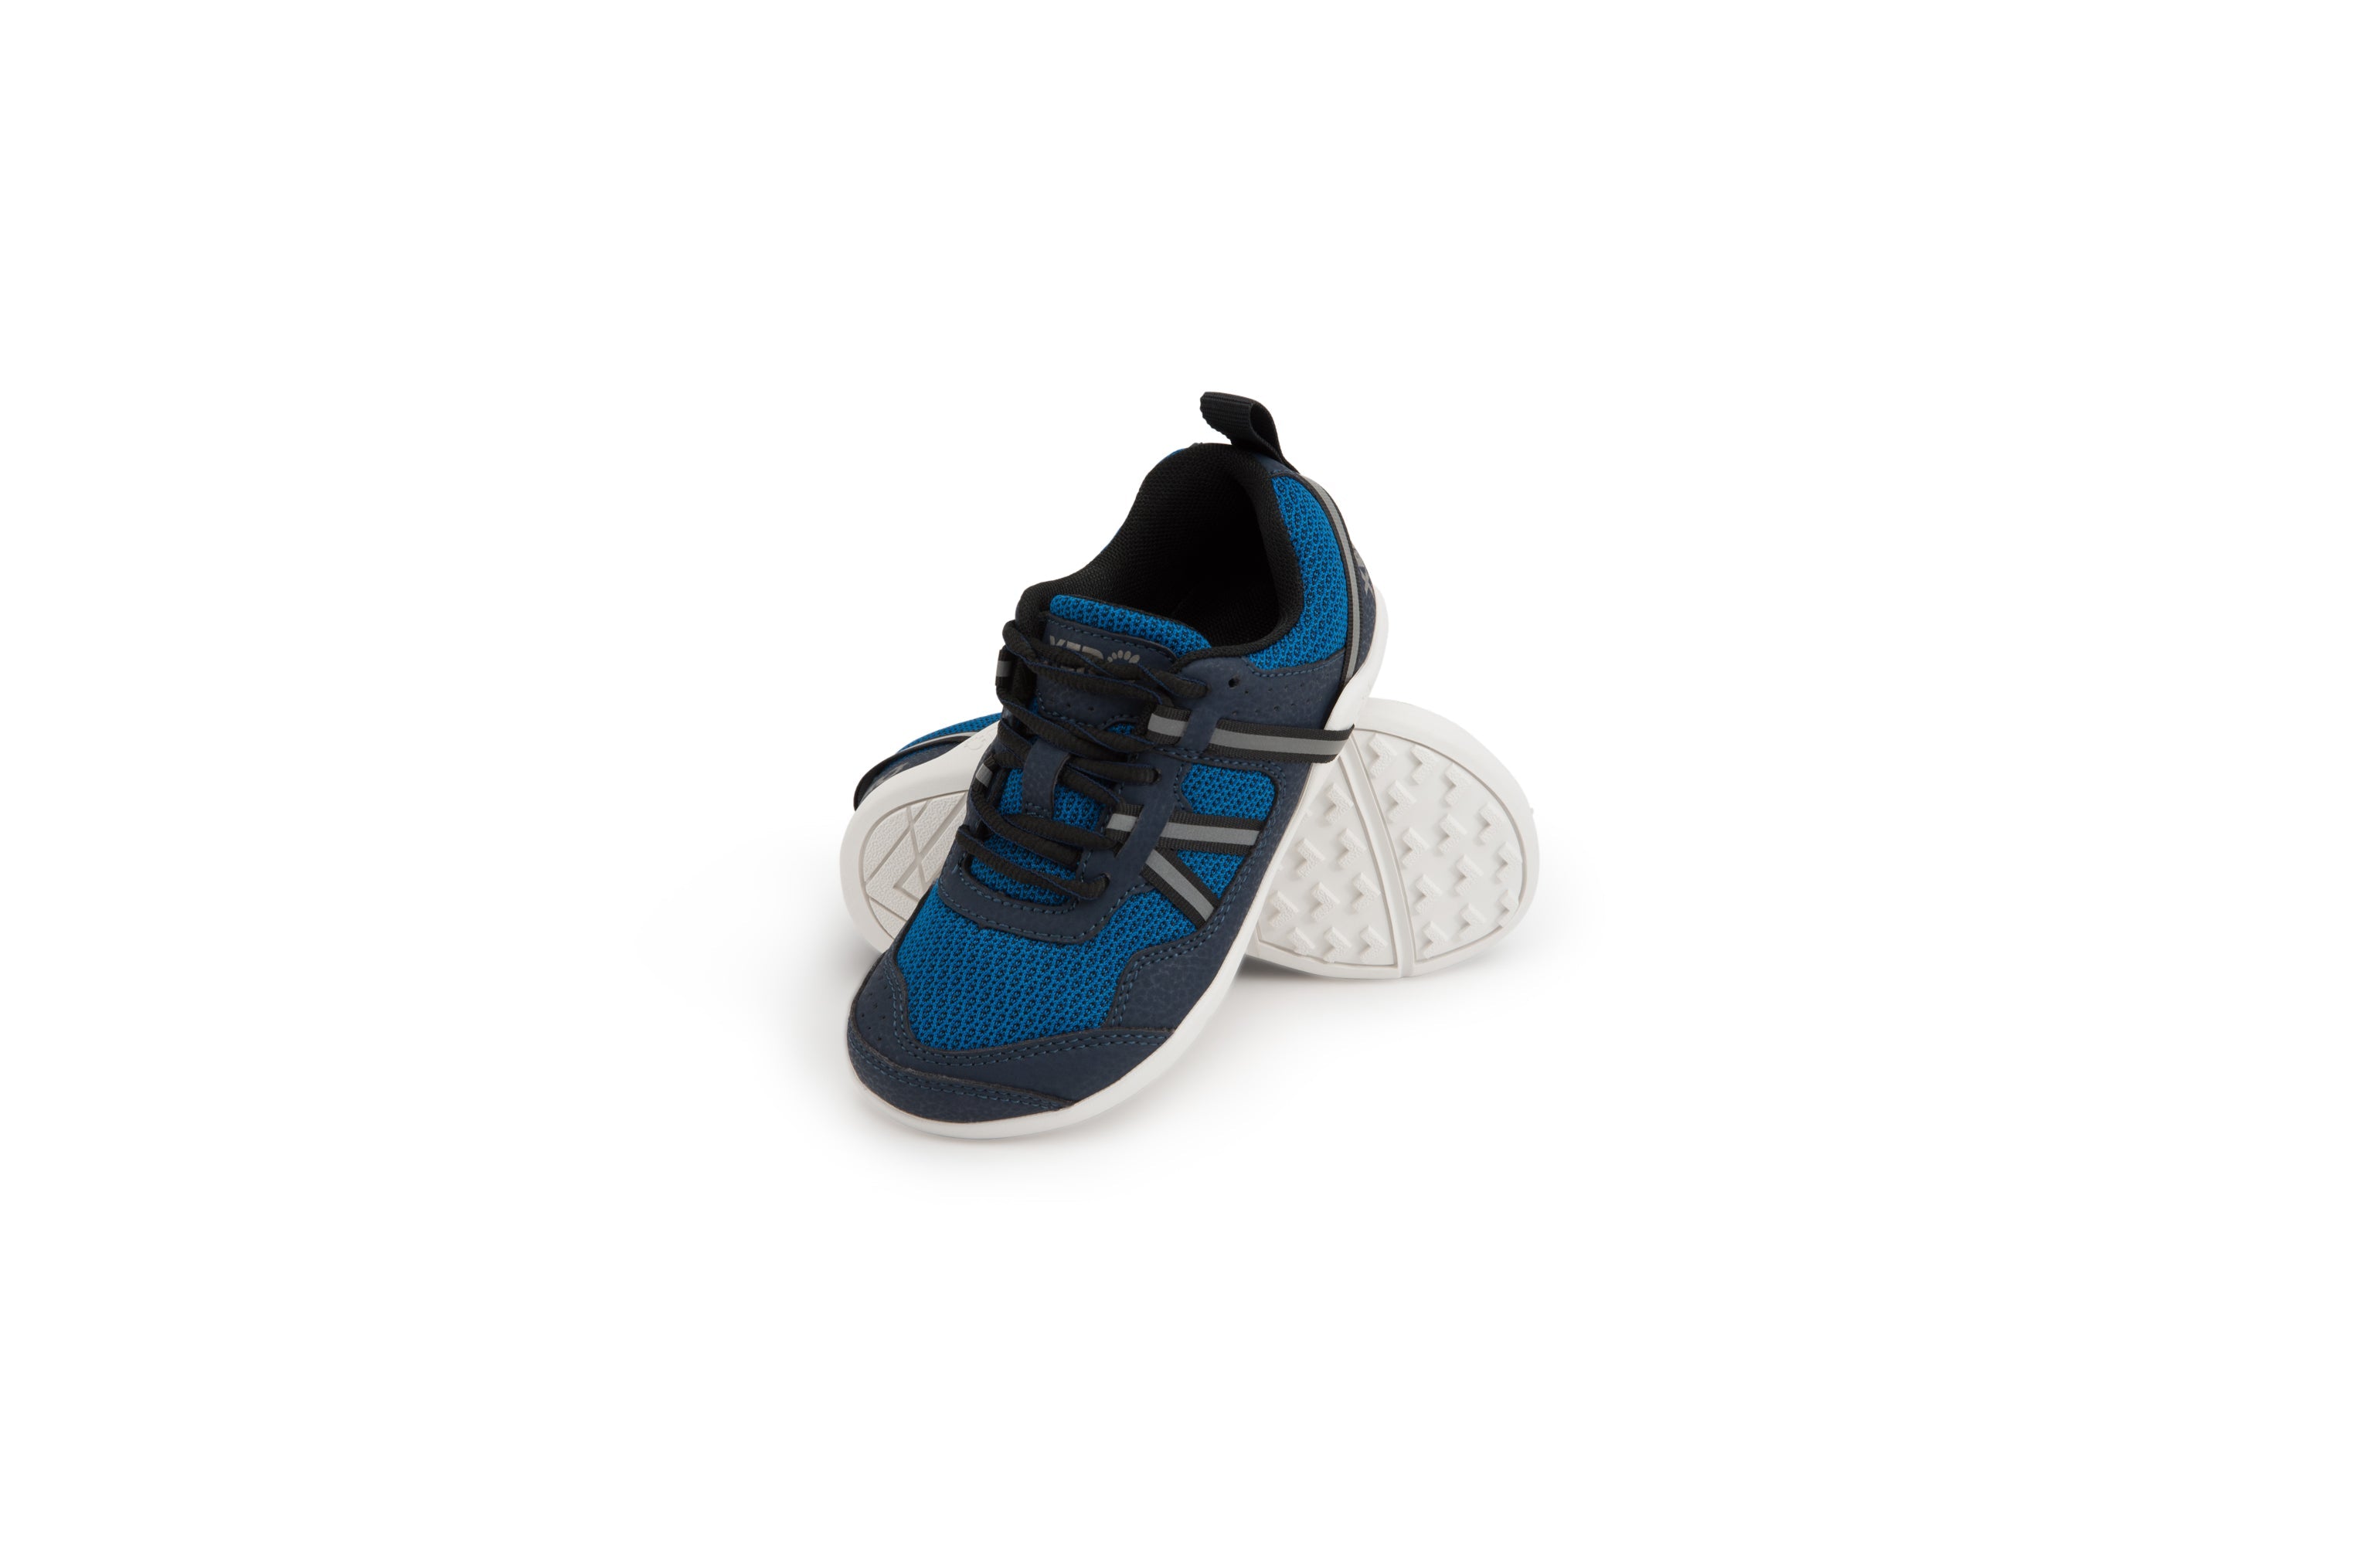 Xero Shoes Prio Kids barfods træningssko/sneakers til børn i farven mykonos blue, par